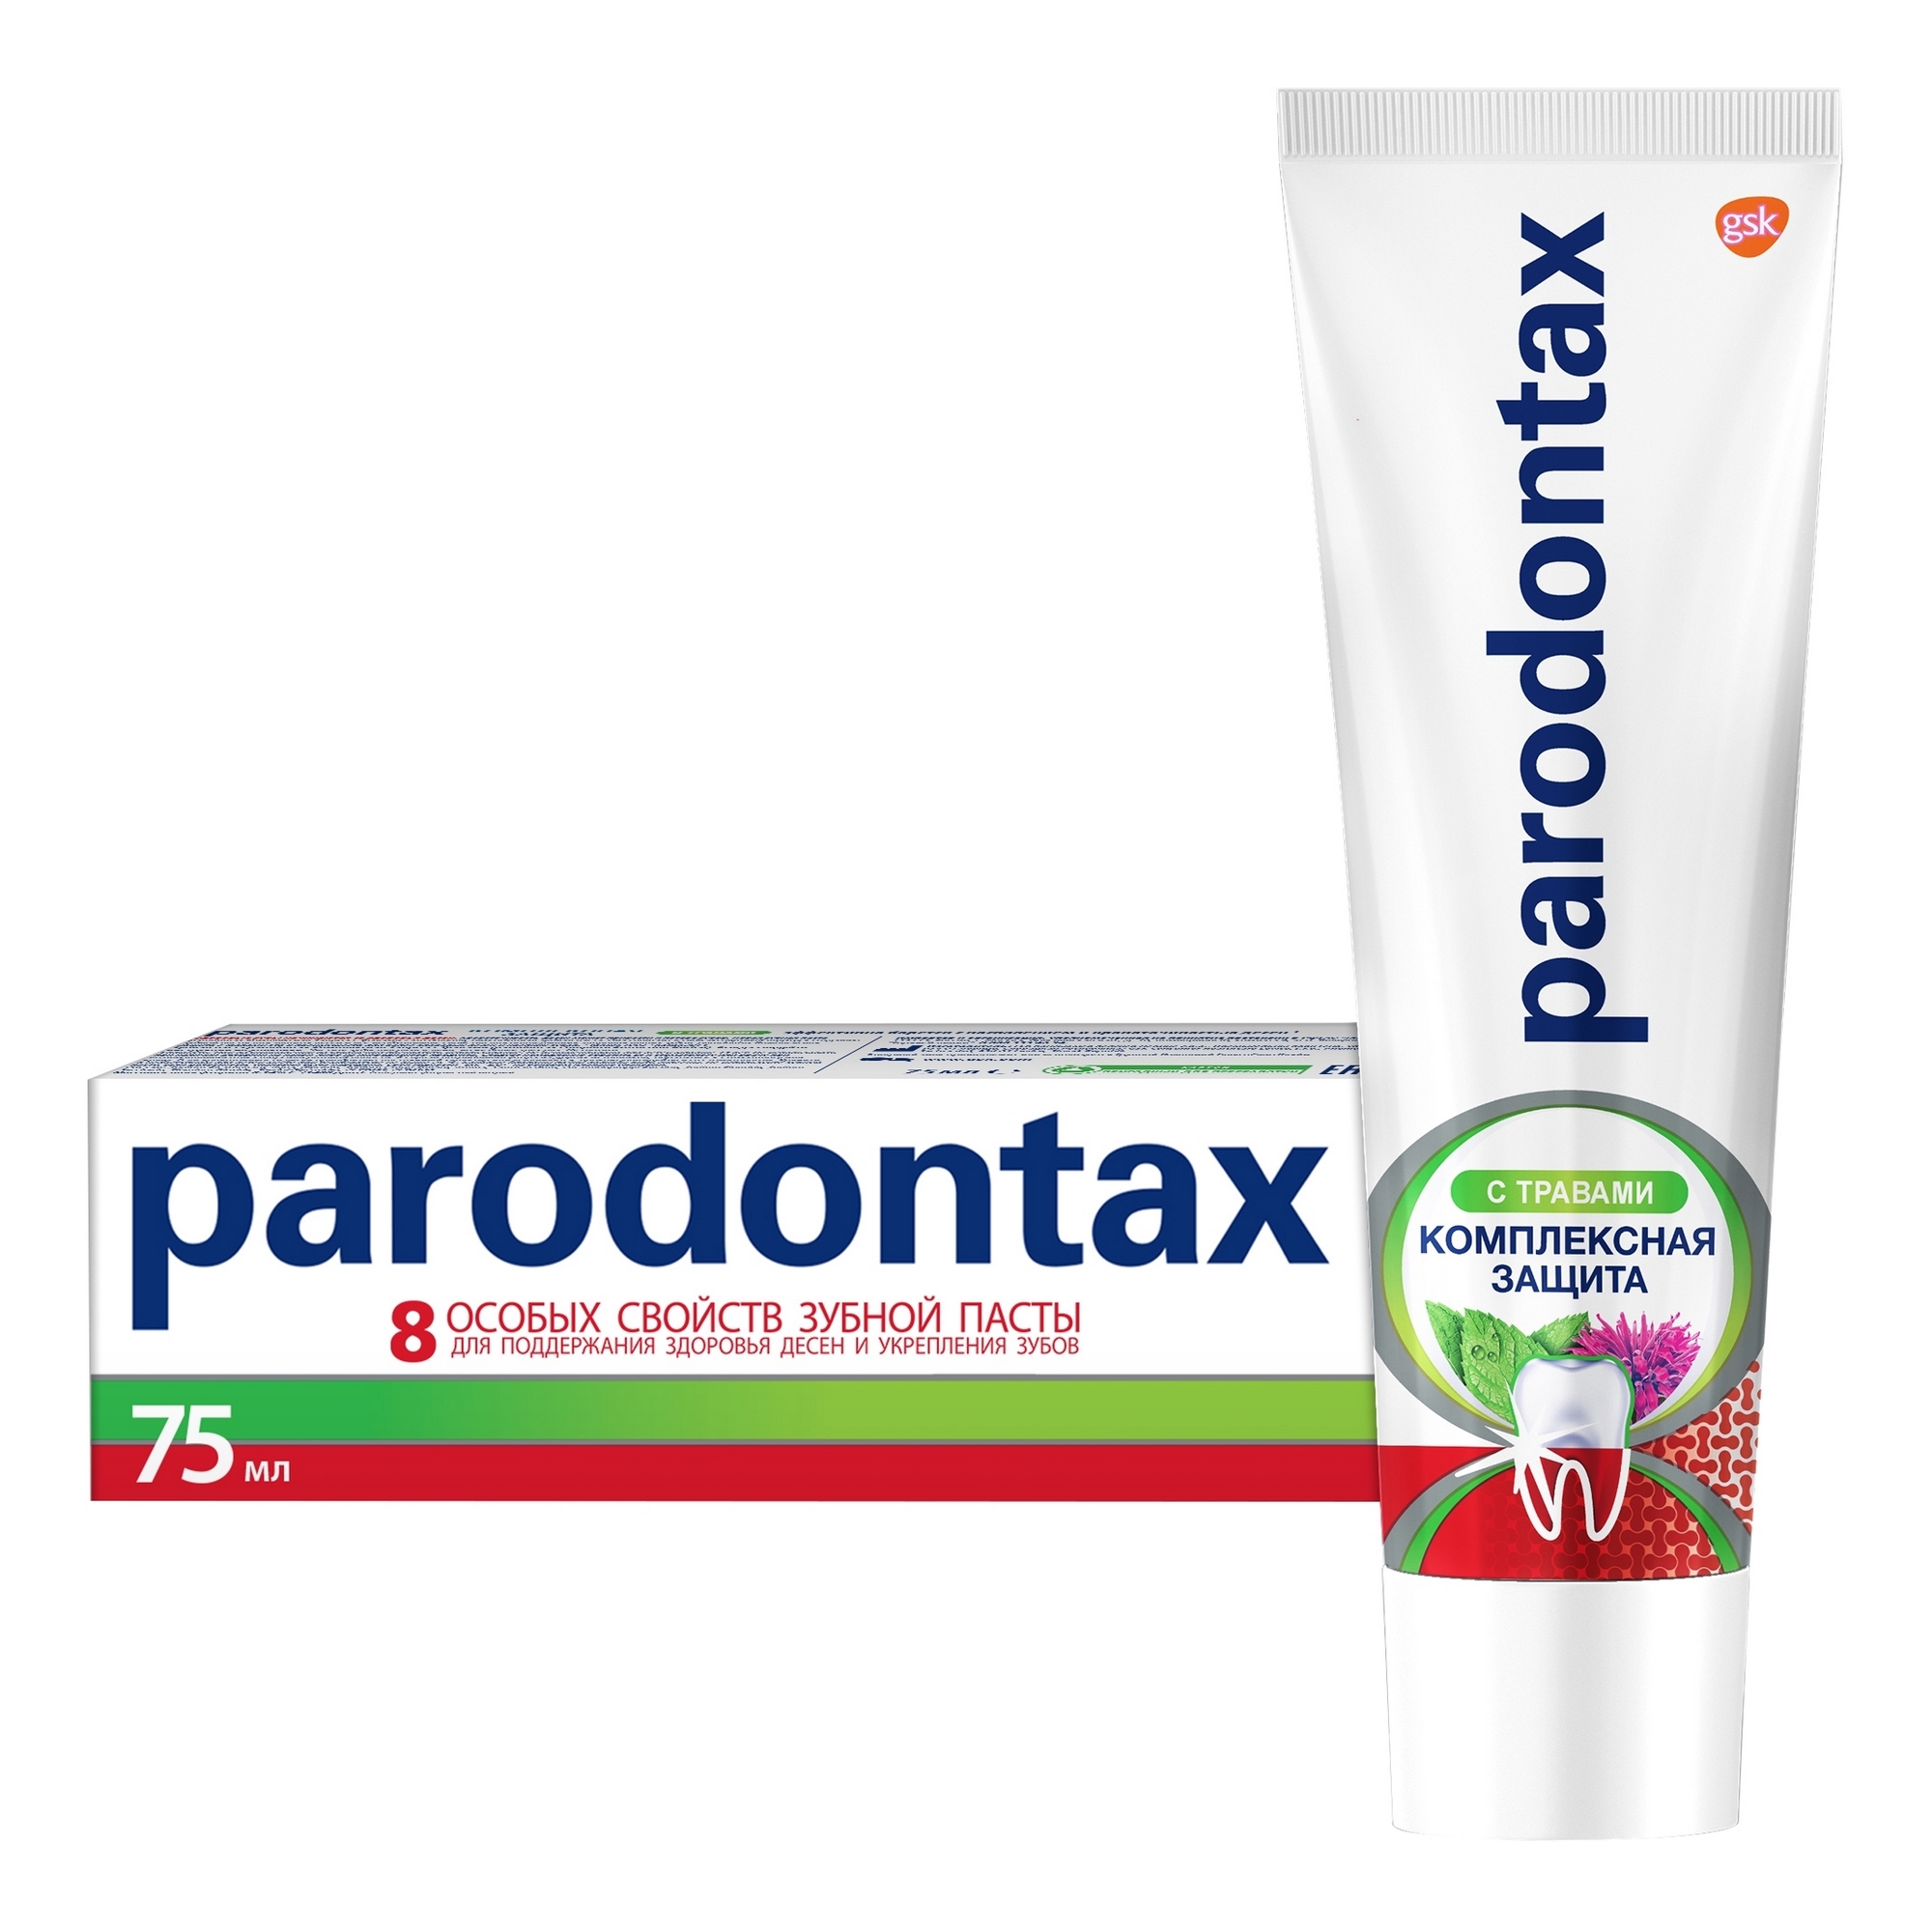 Зубная паста Parodontax Комплексная защита с травами 75 мл зубная паста parodontax ультра очищение 75 мл